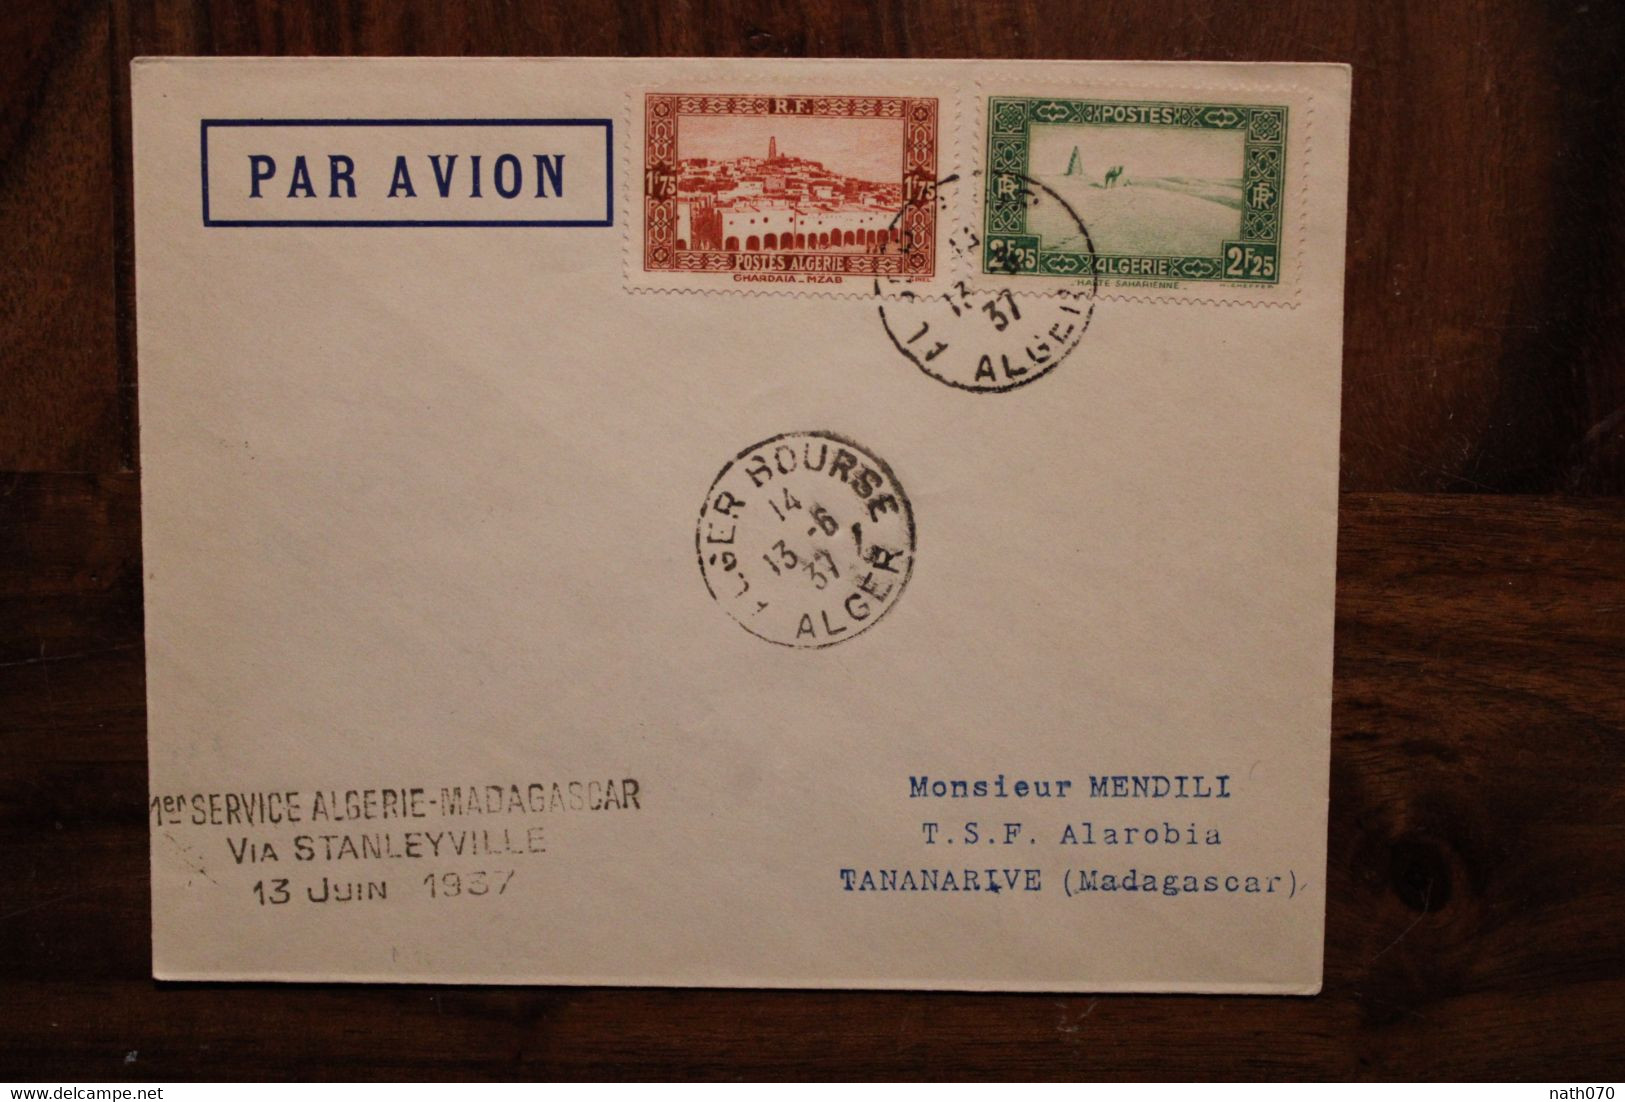 1937 1er Service Algérie Madagascar France Via Stanleyville  Enveloppe Cover Colonie Par Avion Air Mail - Airmail